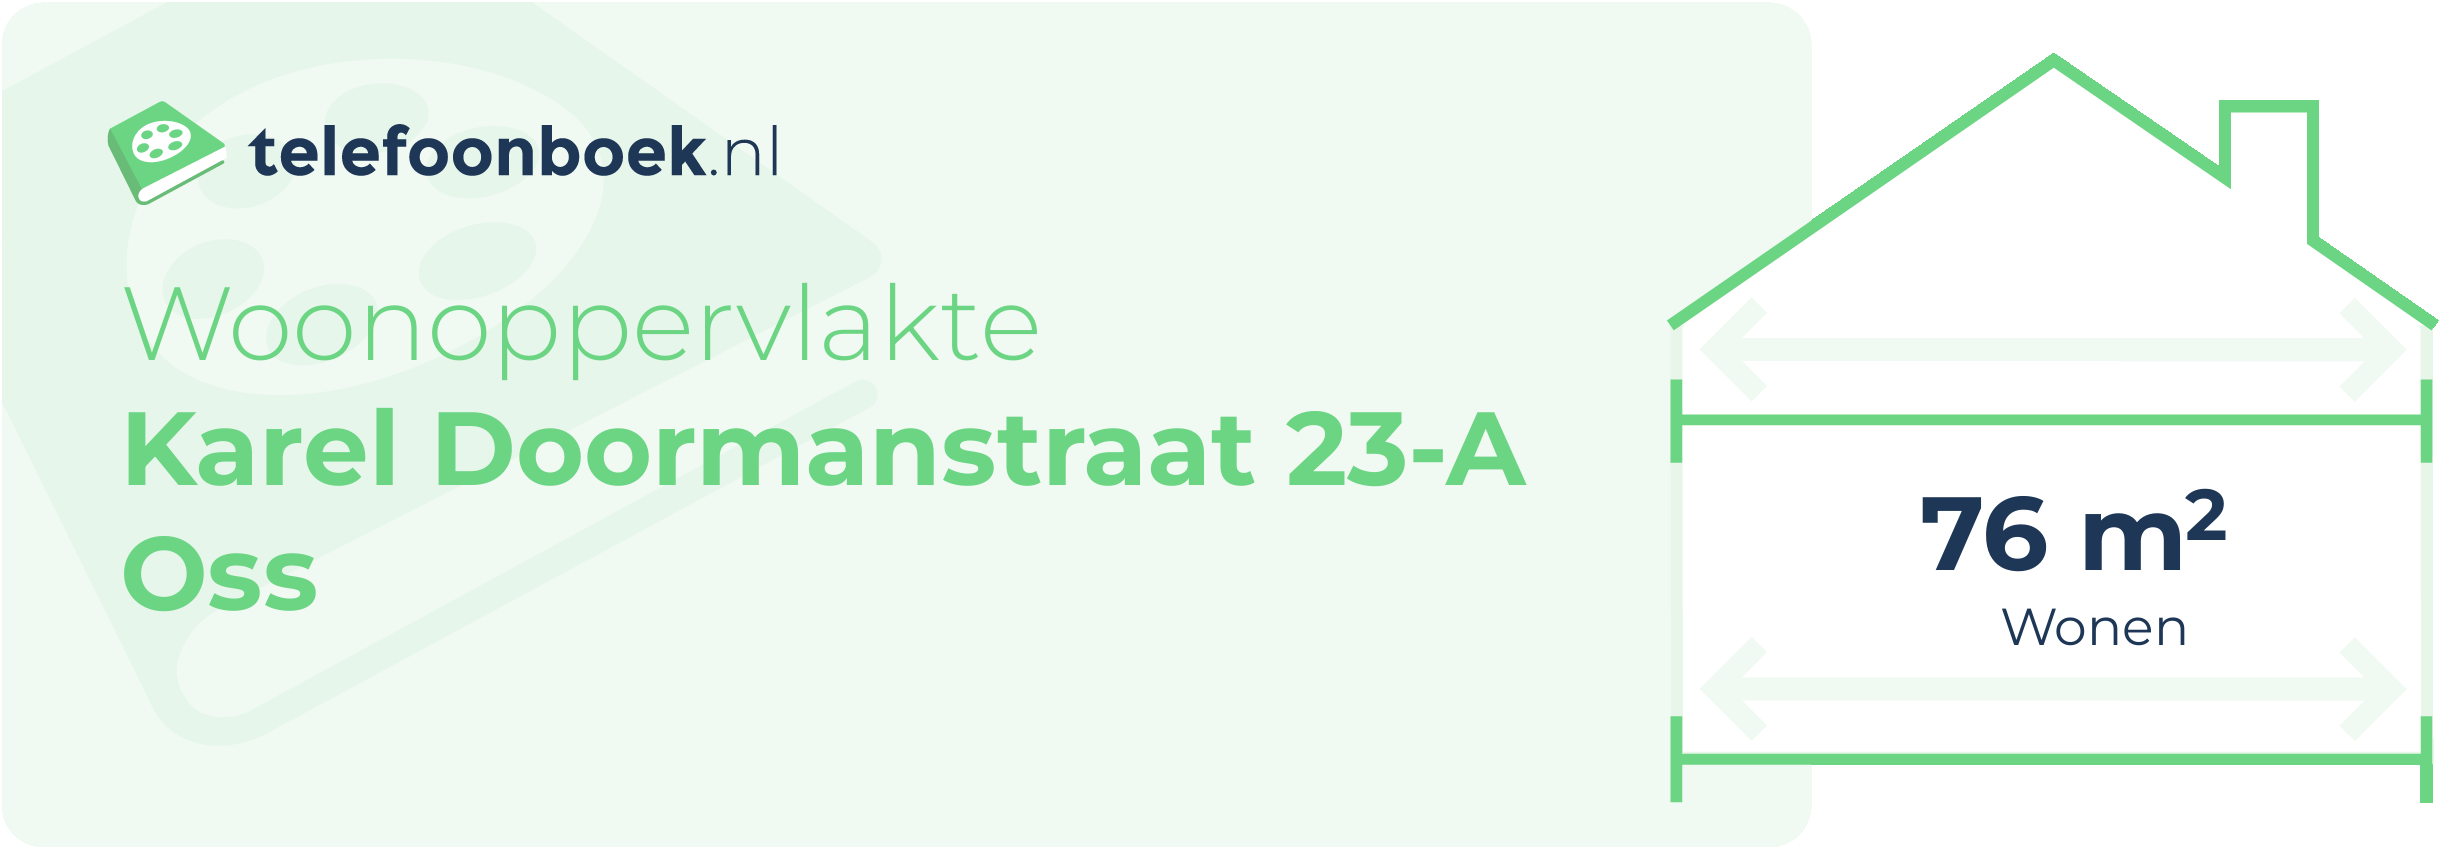 Woonoppervlakte Karel Doormanstraat 23-A Oss